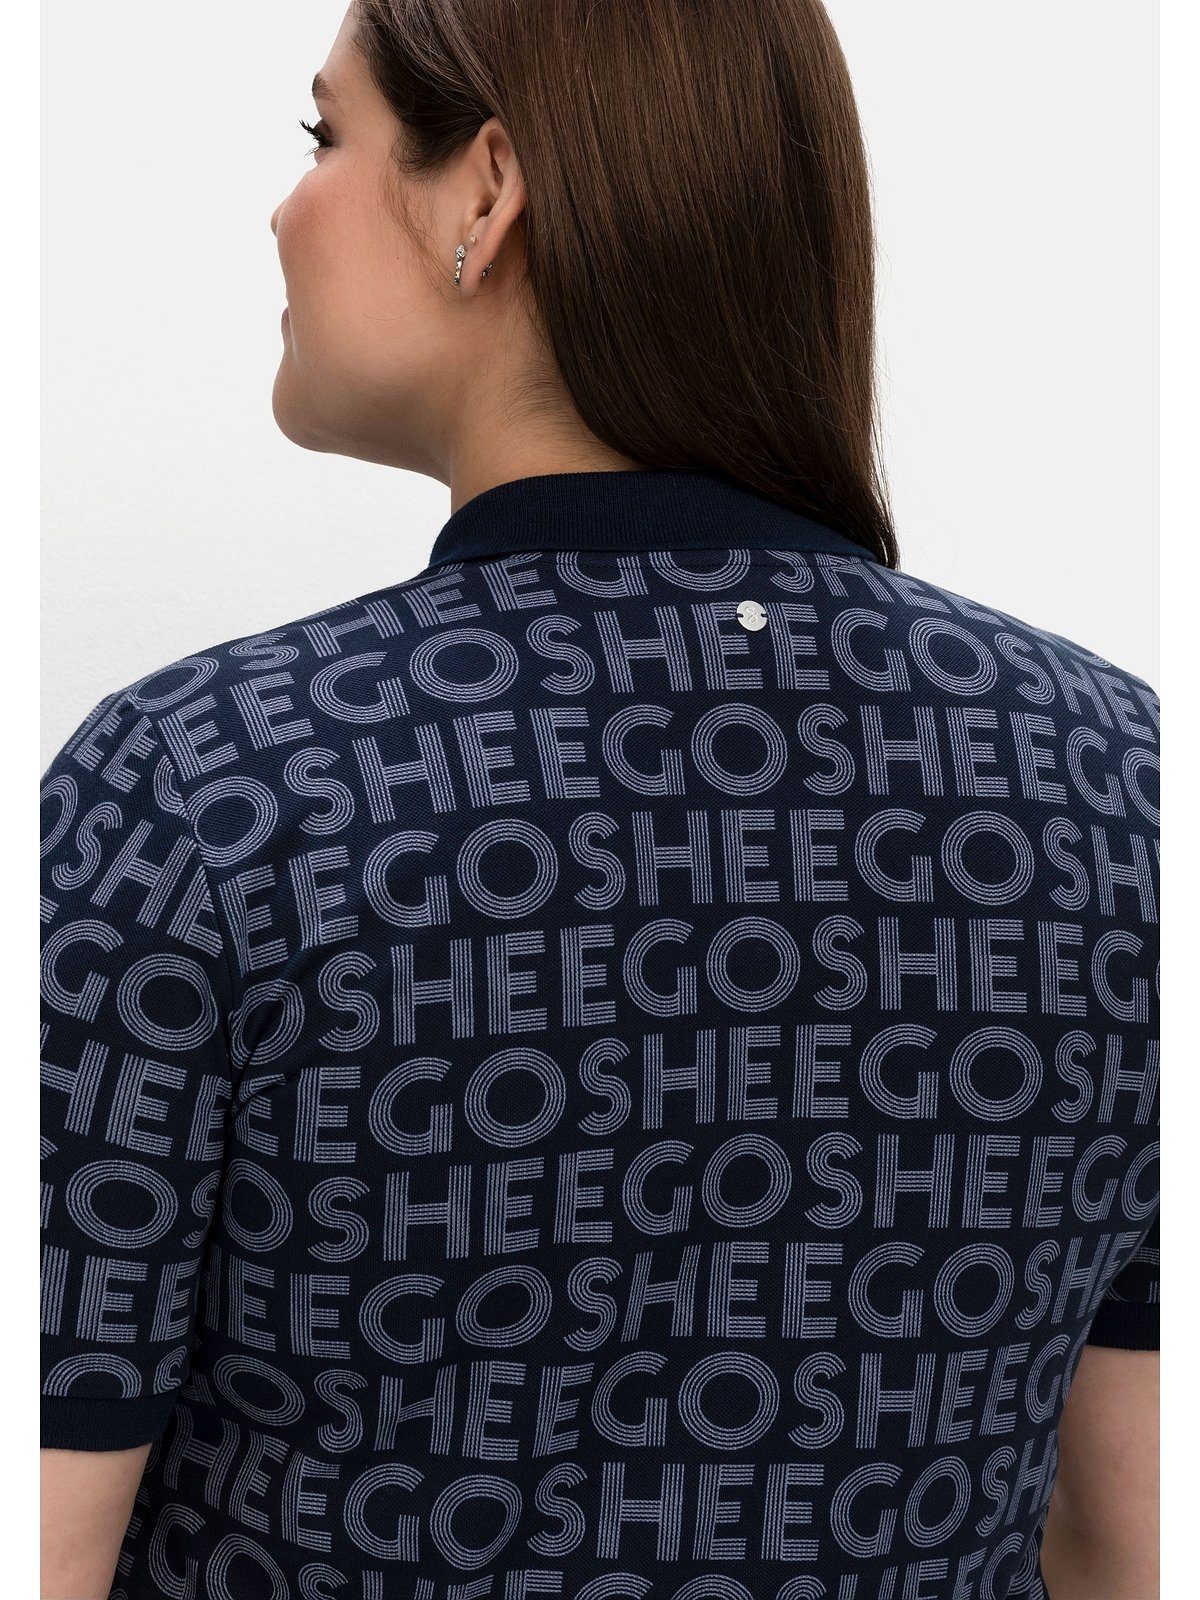 Sheego T-Shirt Große Größen mit Waffelpiqué Alloverdruck, aus